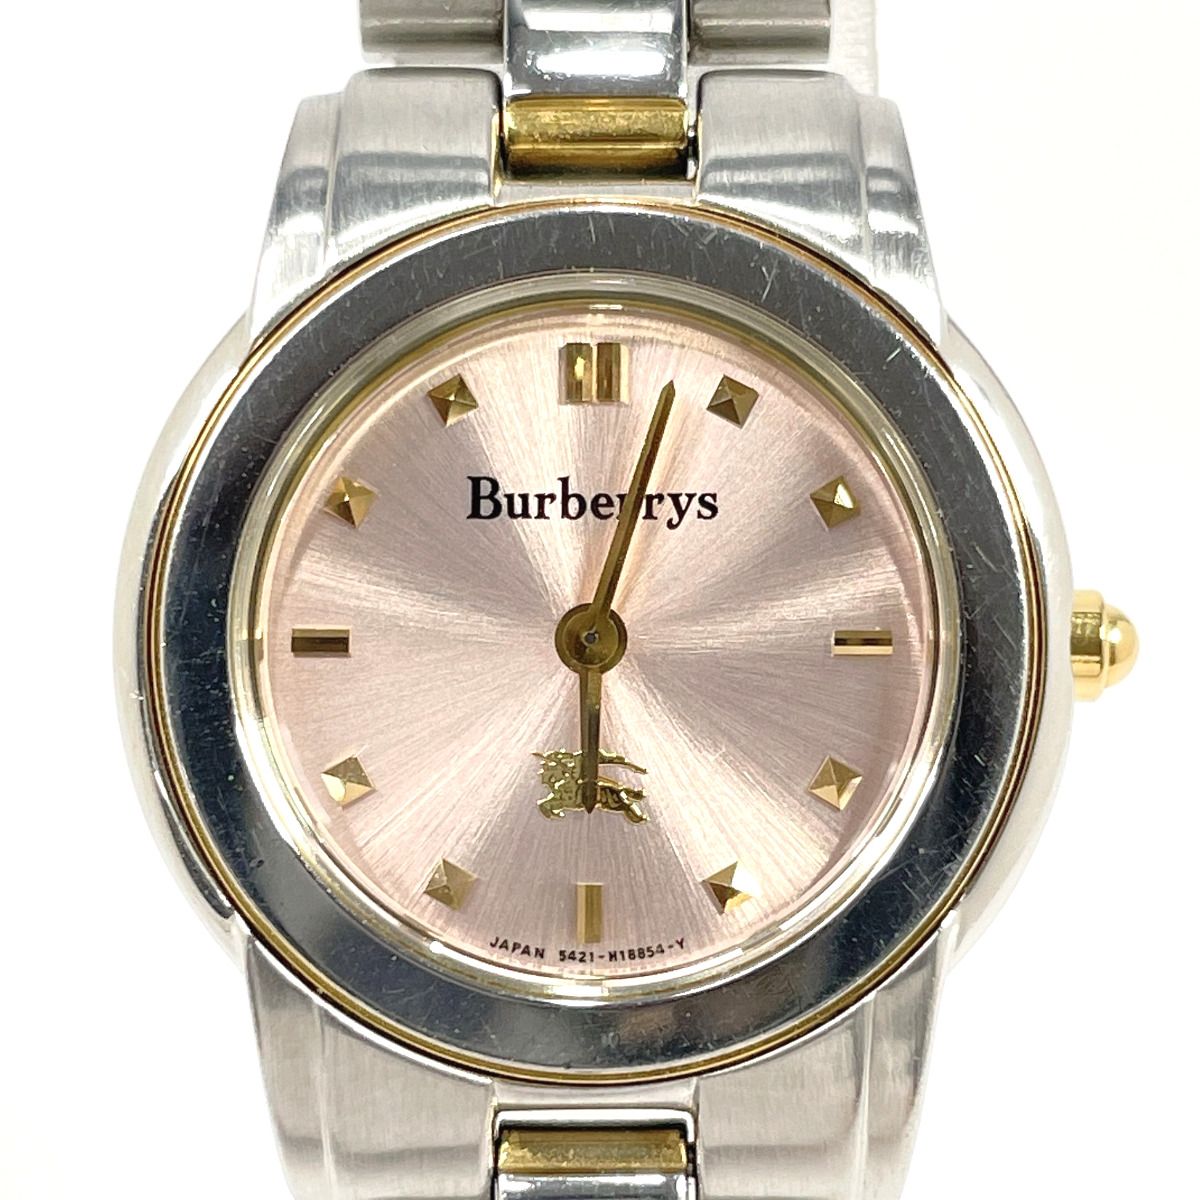 バーバリー 腕時計 5421-H11399 Y シルバー - メルカリ